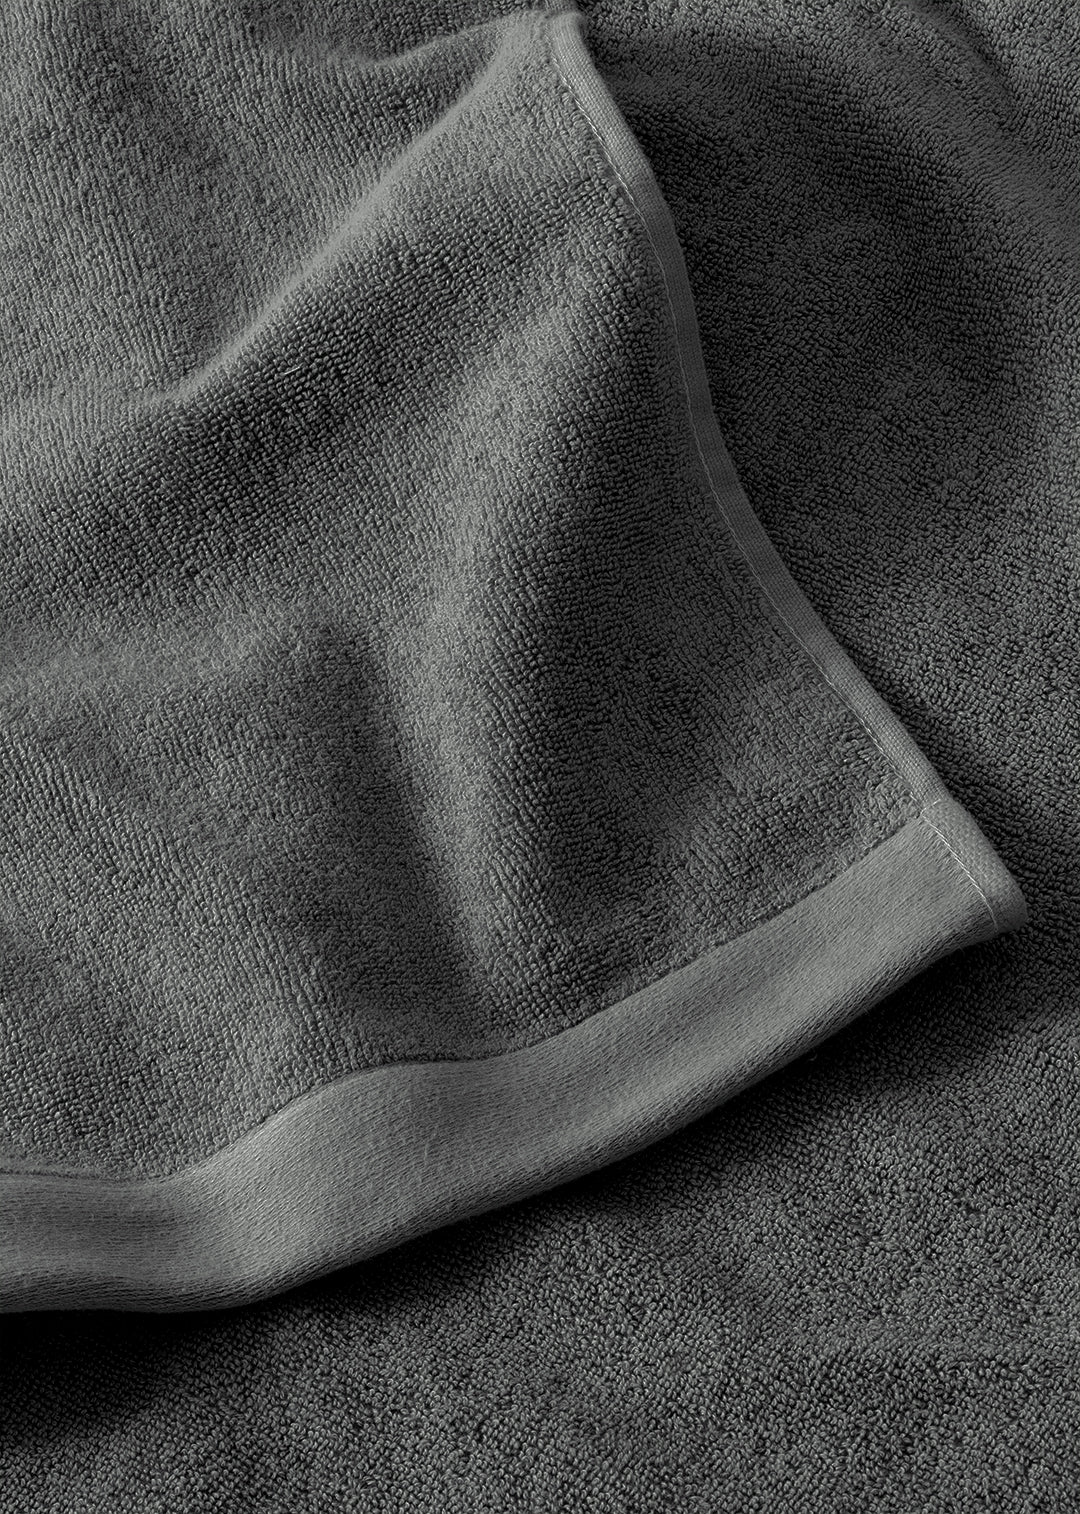 Handtuch Baumwolle Anthrazit 70 x 130 cm